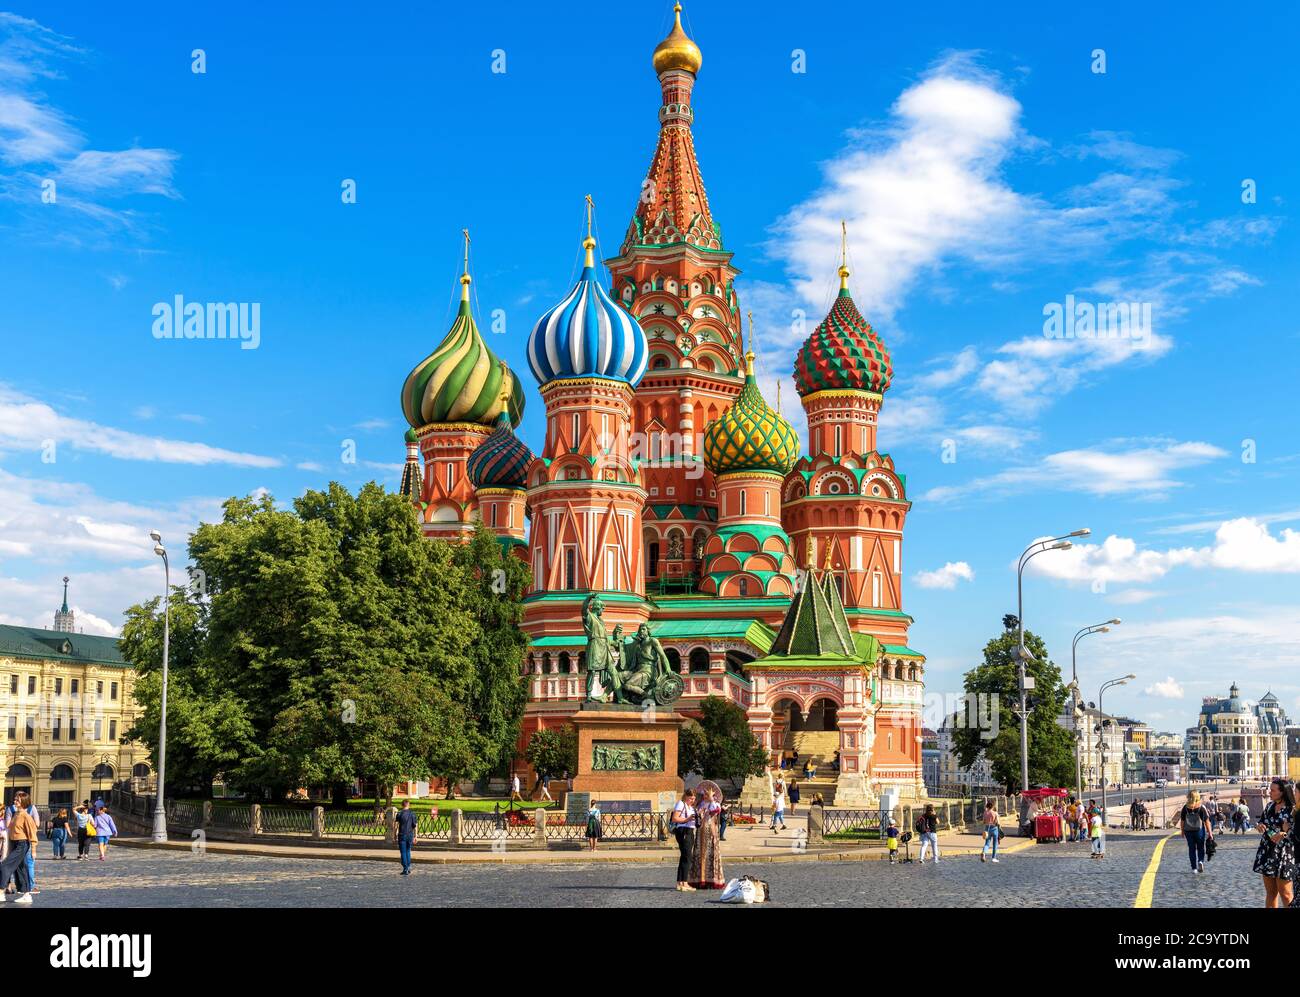 Moskau - 20. Juli 2020: Basilius-`s-Kathedrale auf dem Roten Platz in Moskau, Russland. Schöne alte Kirche des heiligen Basilius`s ist berühmte Touristenattraktion von c Stockfoto